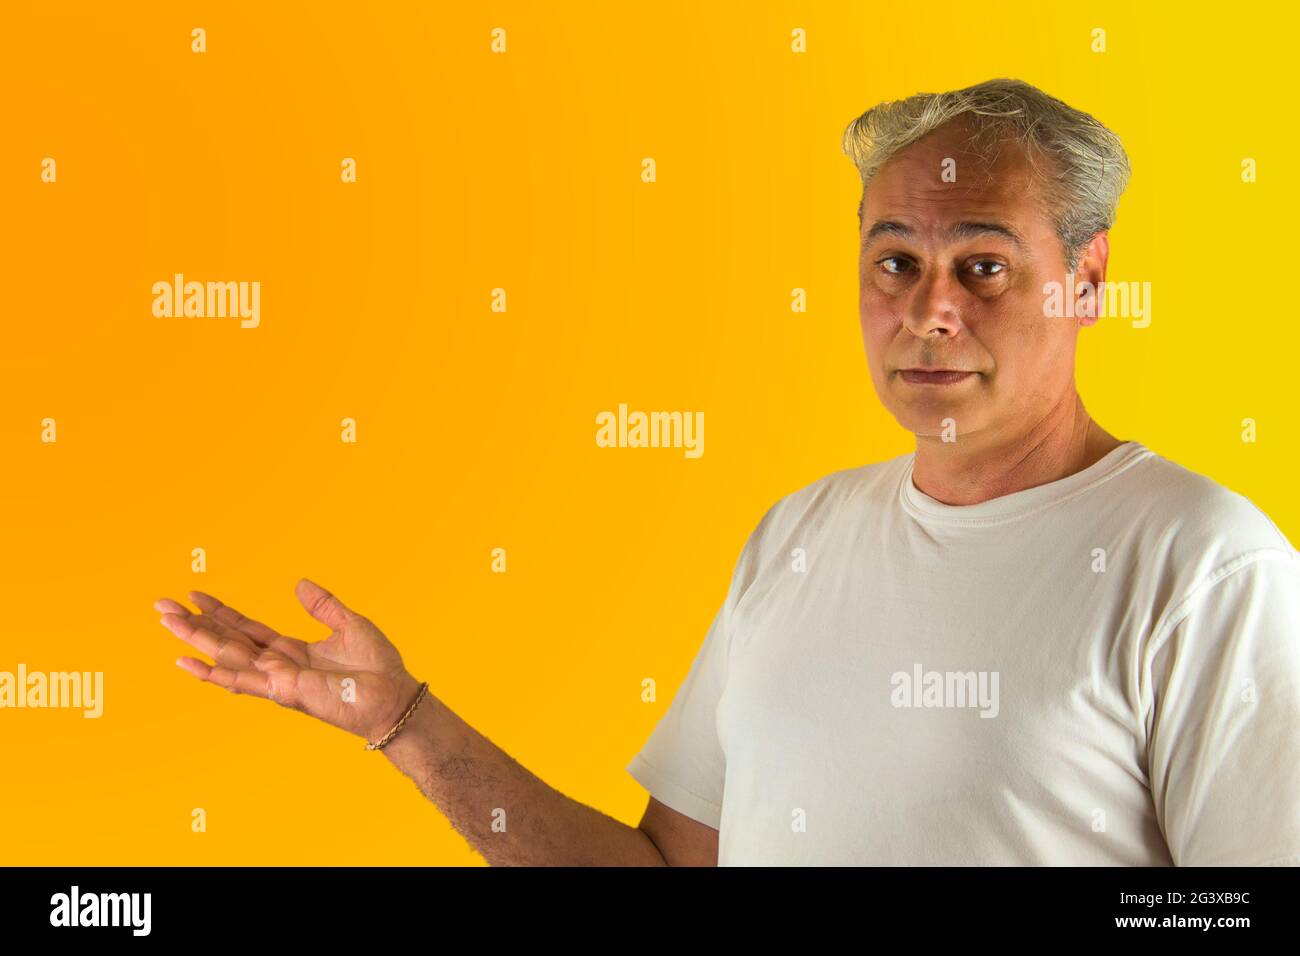 uomo dai capelli grigi che mostra qualcosa con la mano su uno sfondo giallo e arancione Foto Stock